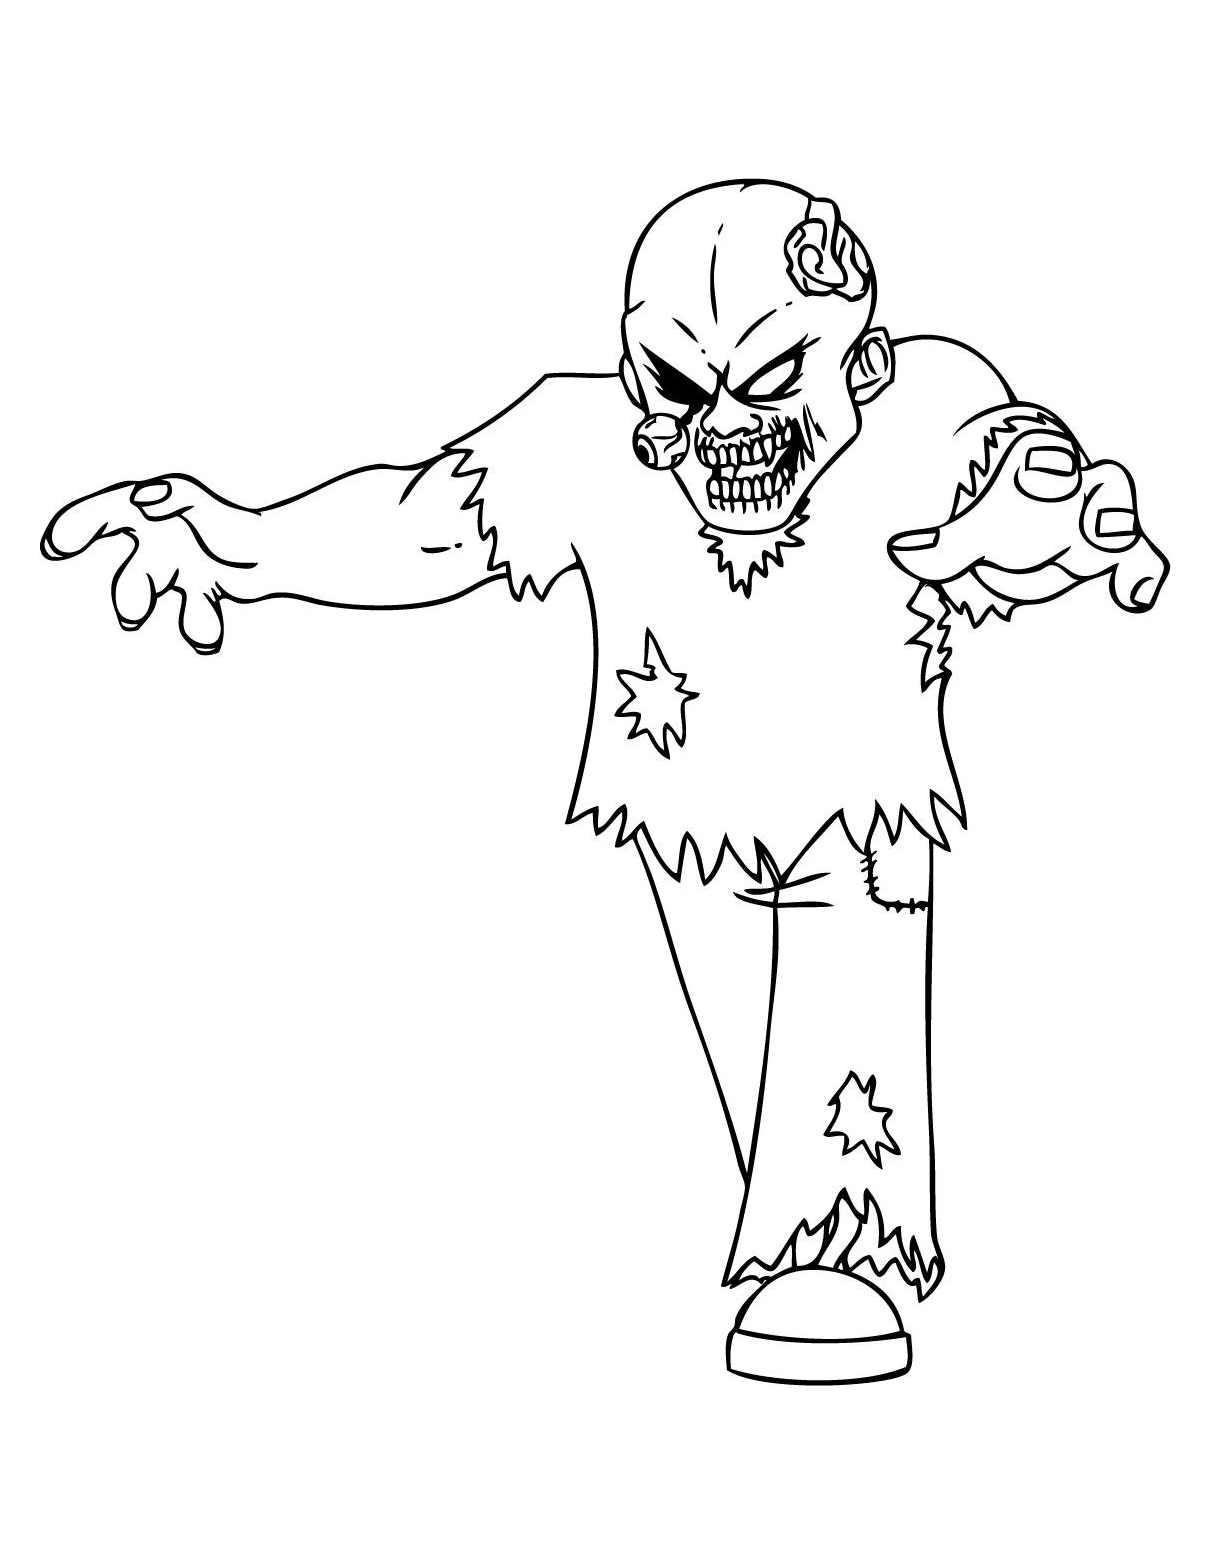 Image de Zombie à imprimer et colorier